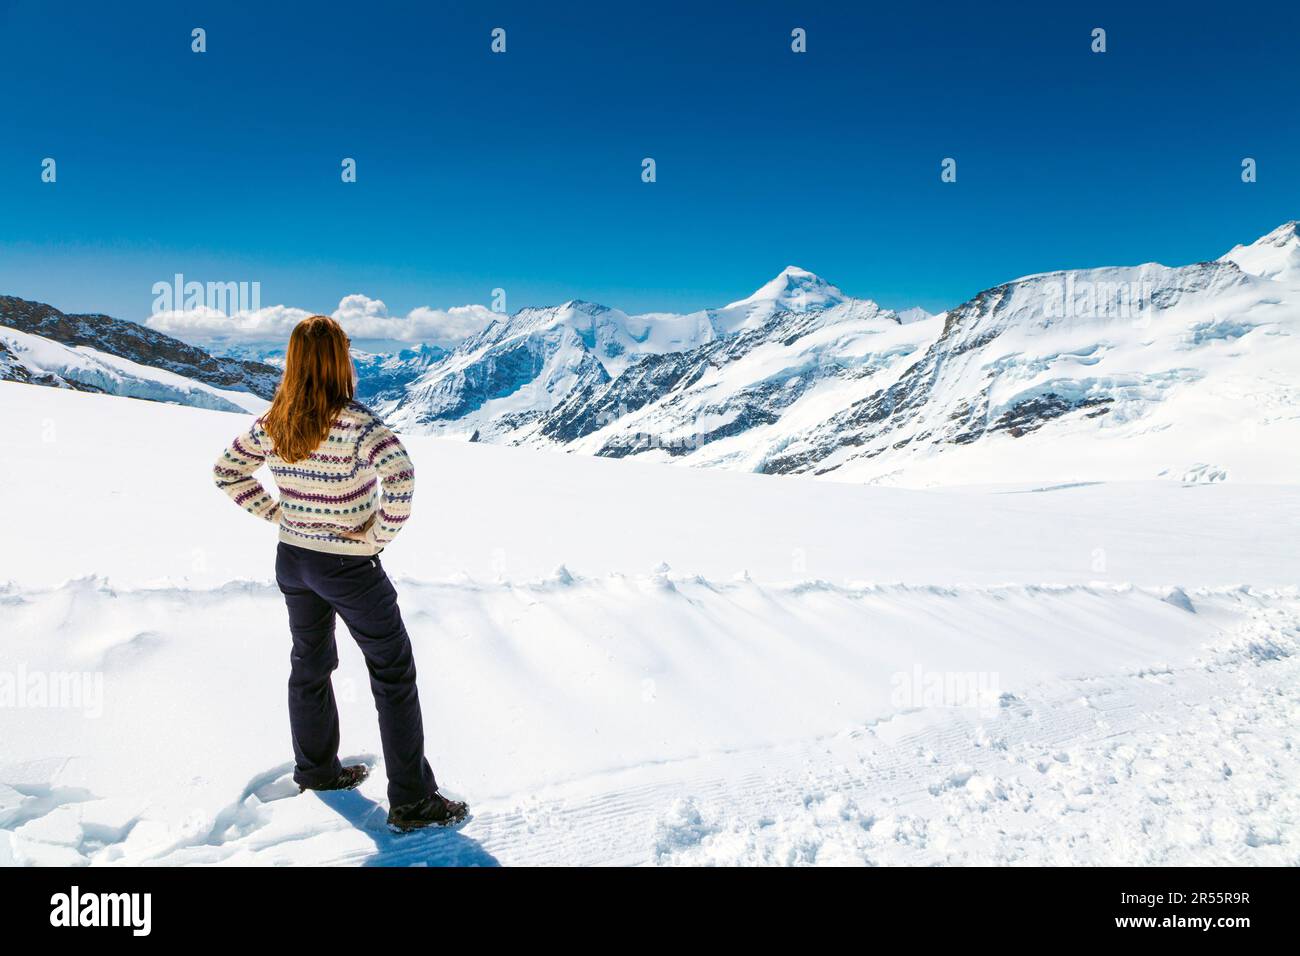 Donna che guarda la vista panoramica sulle montagne e il ghiacciaio Aletsch, il sentiero che collega la cima della Jungfrau al rifugio Mönchsjoch, Alpi svizzere, Svizzera Foto Stock